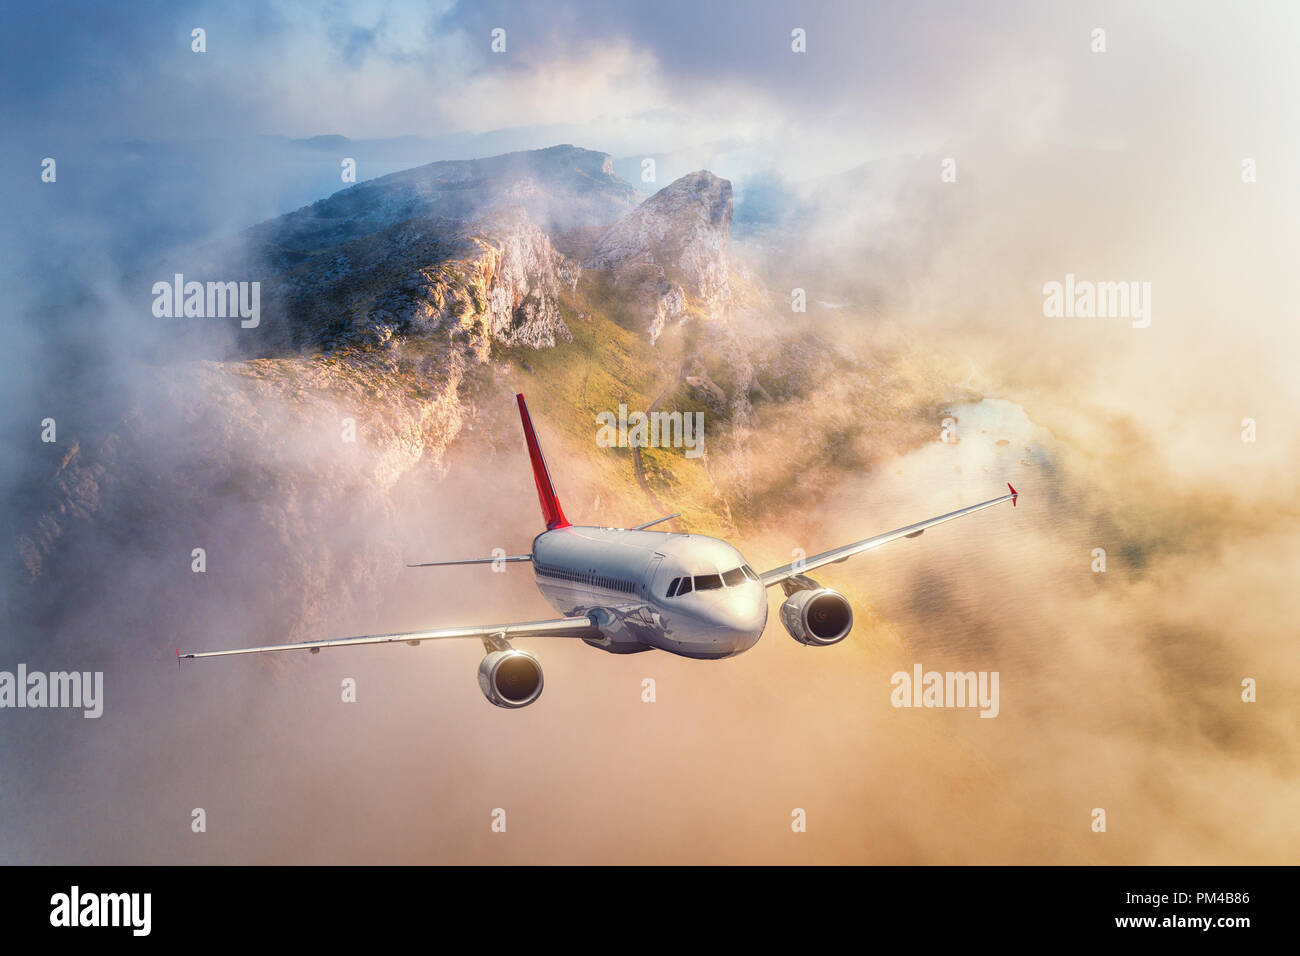 Vol d'un avion au-dessus de montagnes et nuages bas au coucher du soleil en Espagne. Paysage avec des avions de passagers, ciel nuageux, des rochers, des forêts et du soleil. Business Banque D'Images